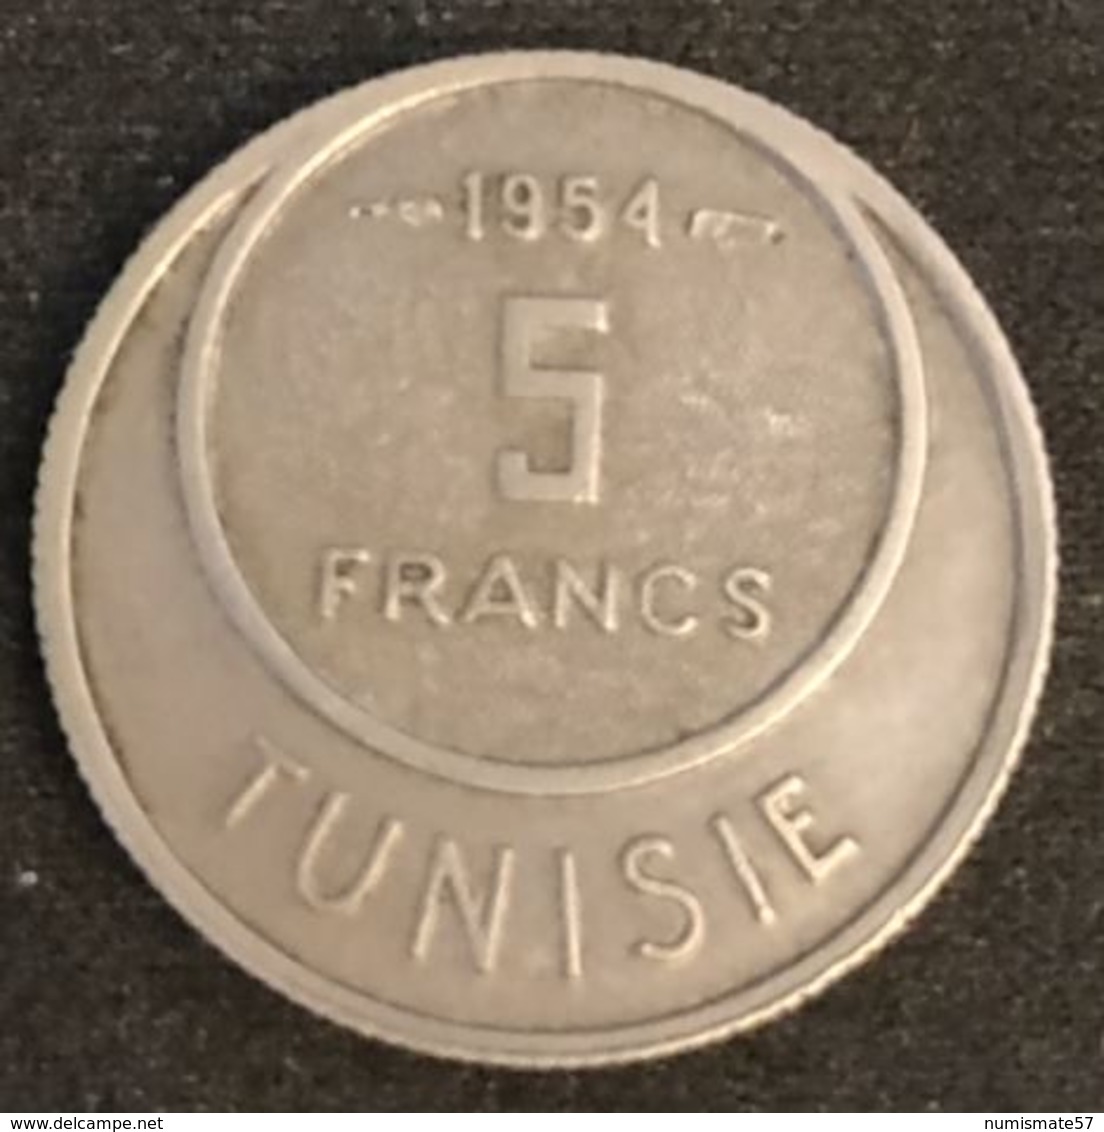 TUNISIE - TUNISIA - 5 FRANCS 1954 ( 1373 ) - KM 277 - Muhammad Al-Nasir - Protectorat Français - Tunisia